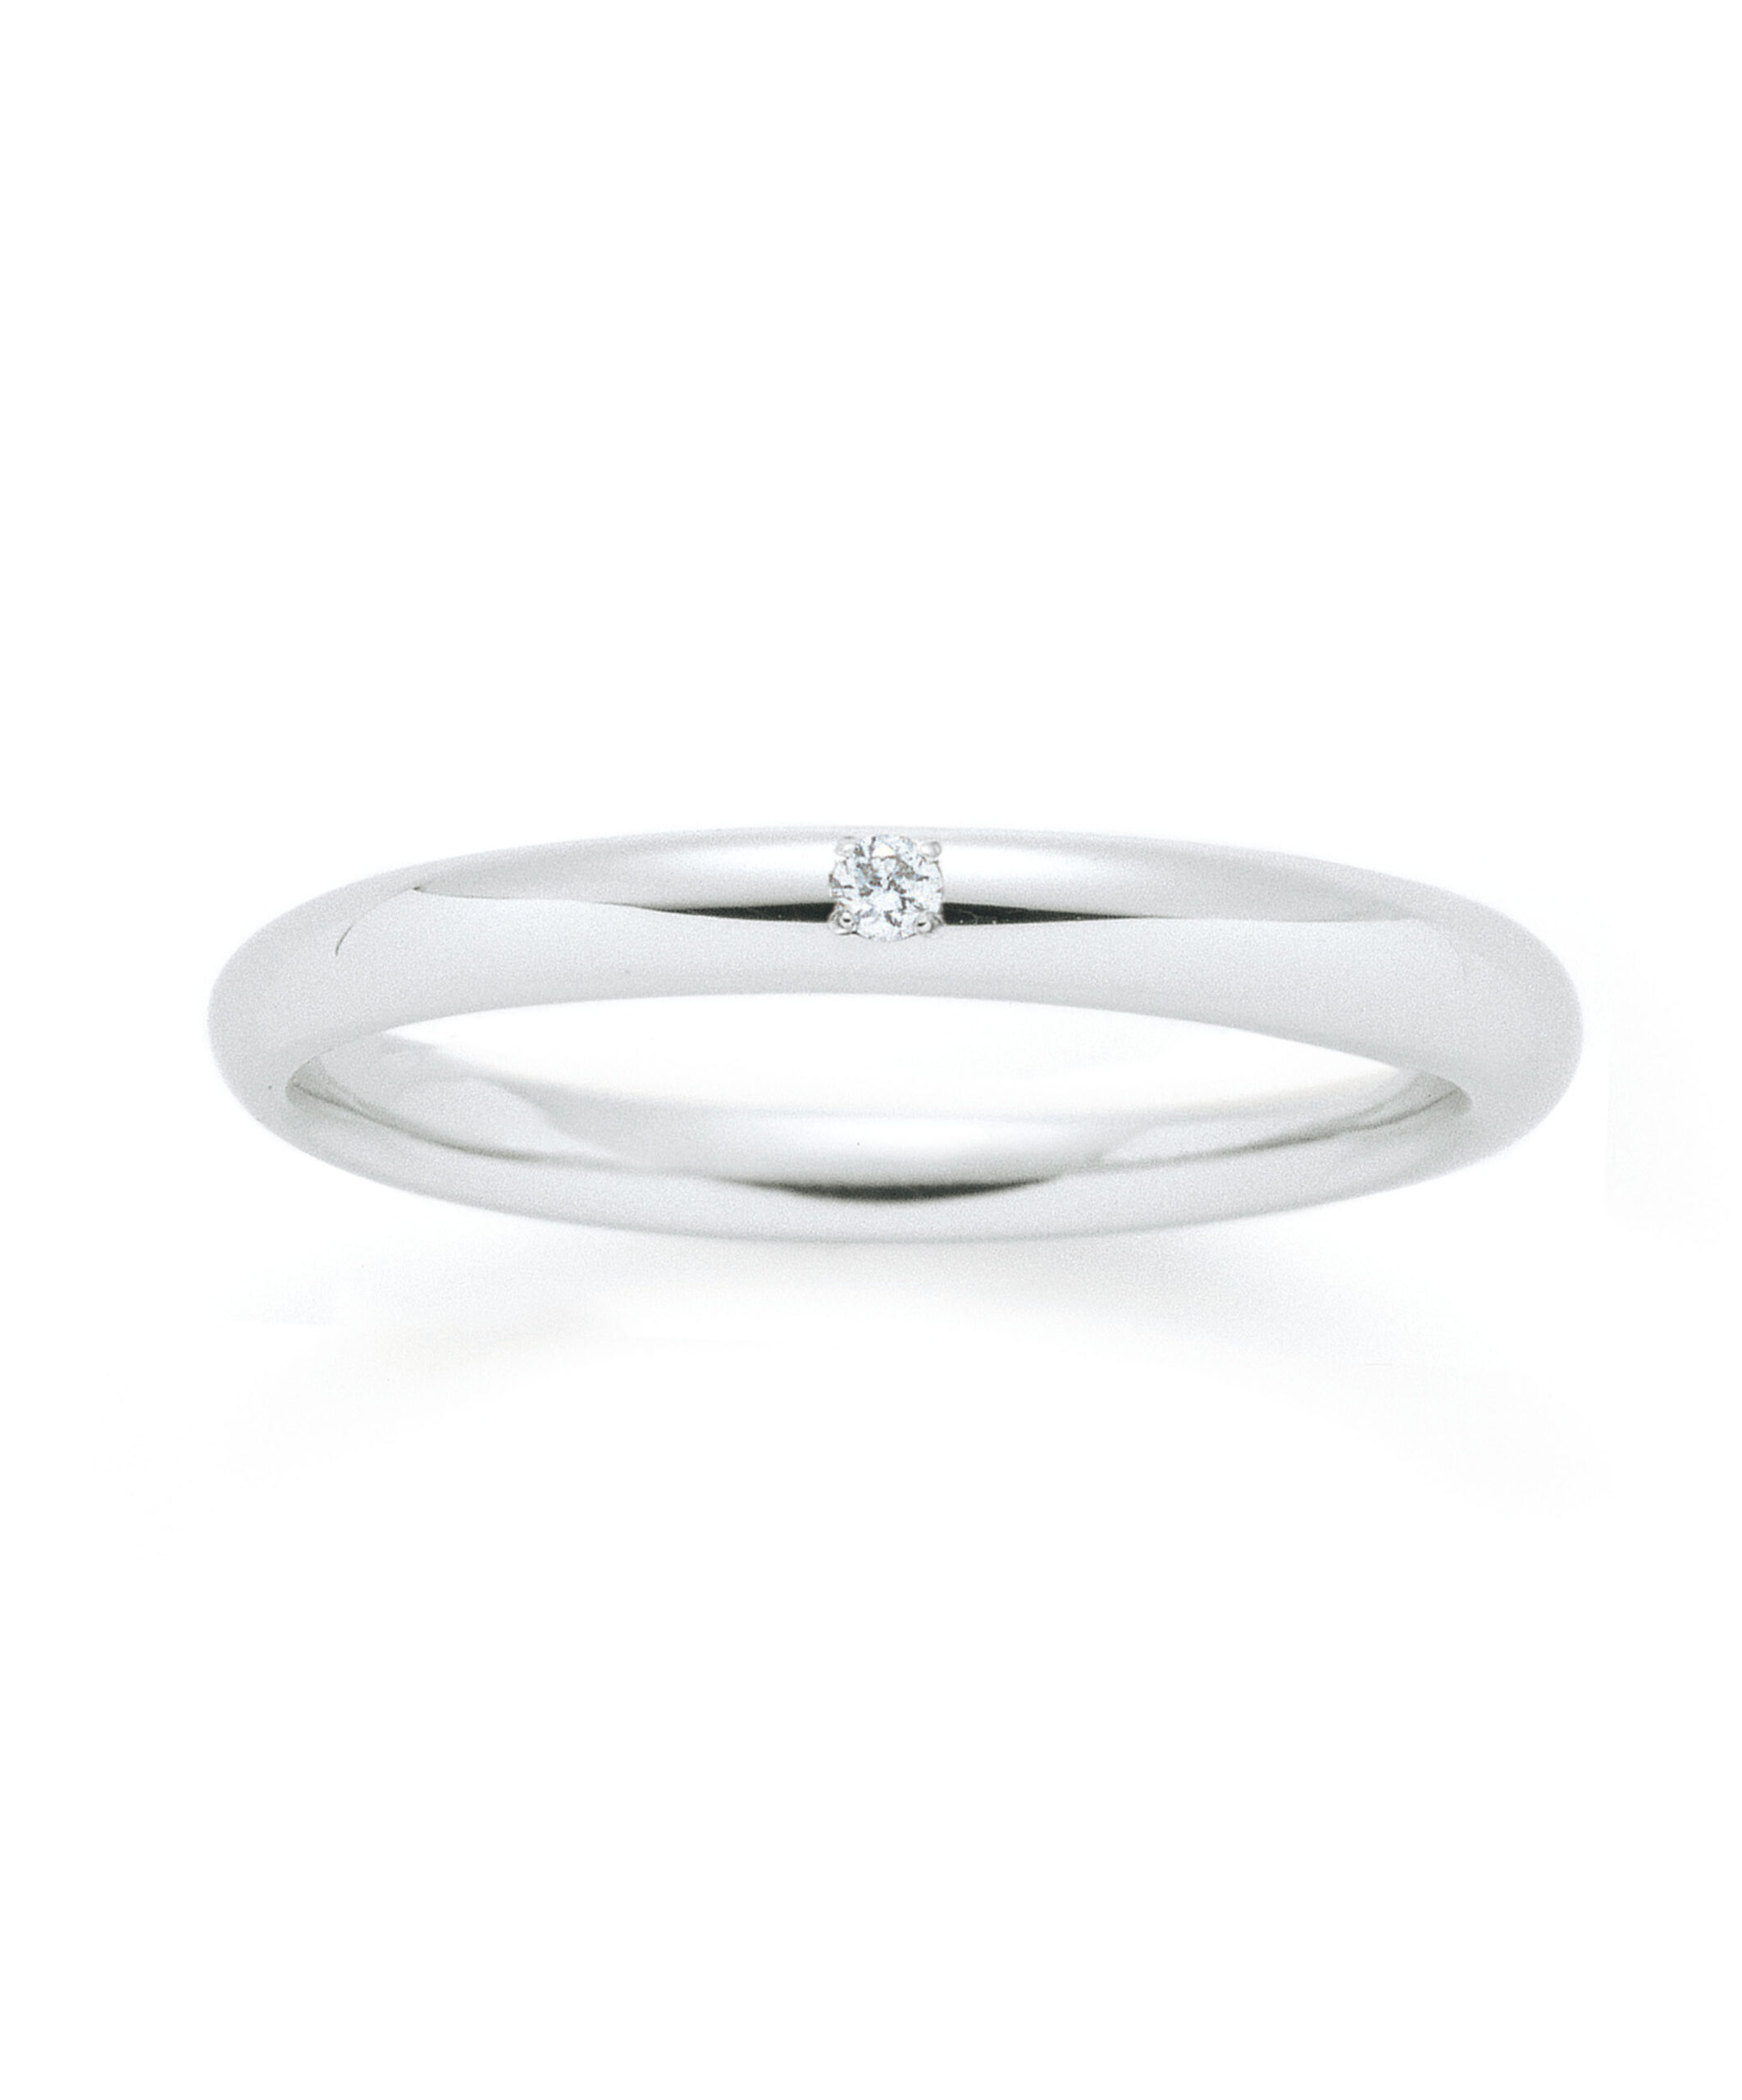 一石ストレートのシンプルタイプの結婚指輪